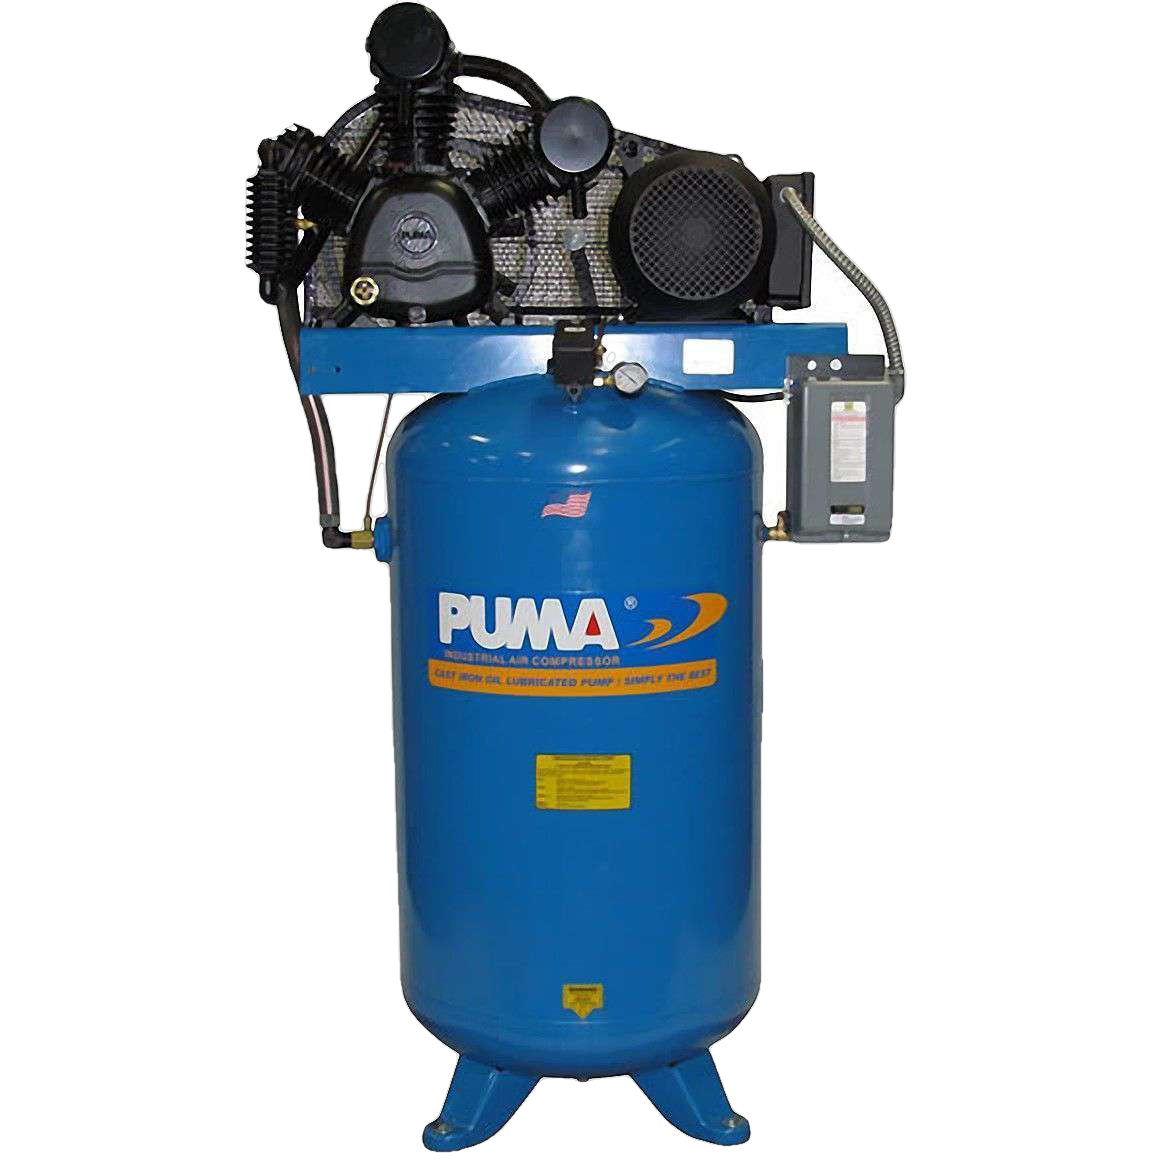 Puma, Puma TUE-7580VM 80 Gallon 7.5 HP Two Stage Air Compressor New